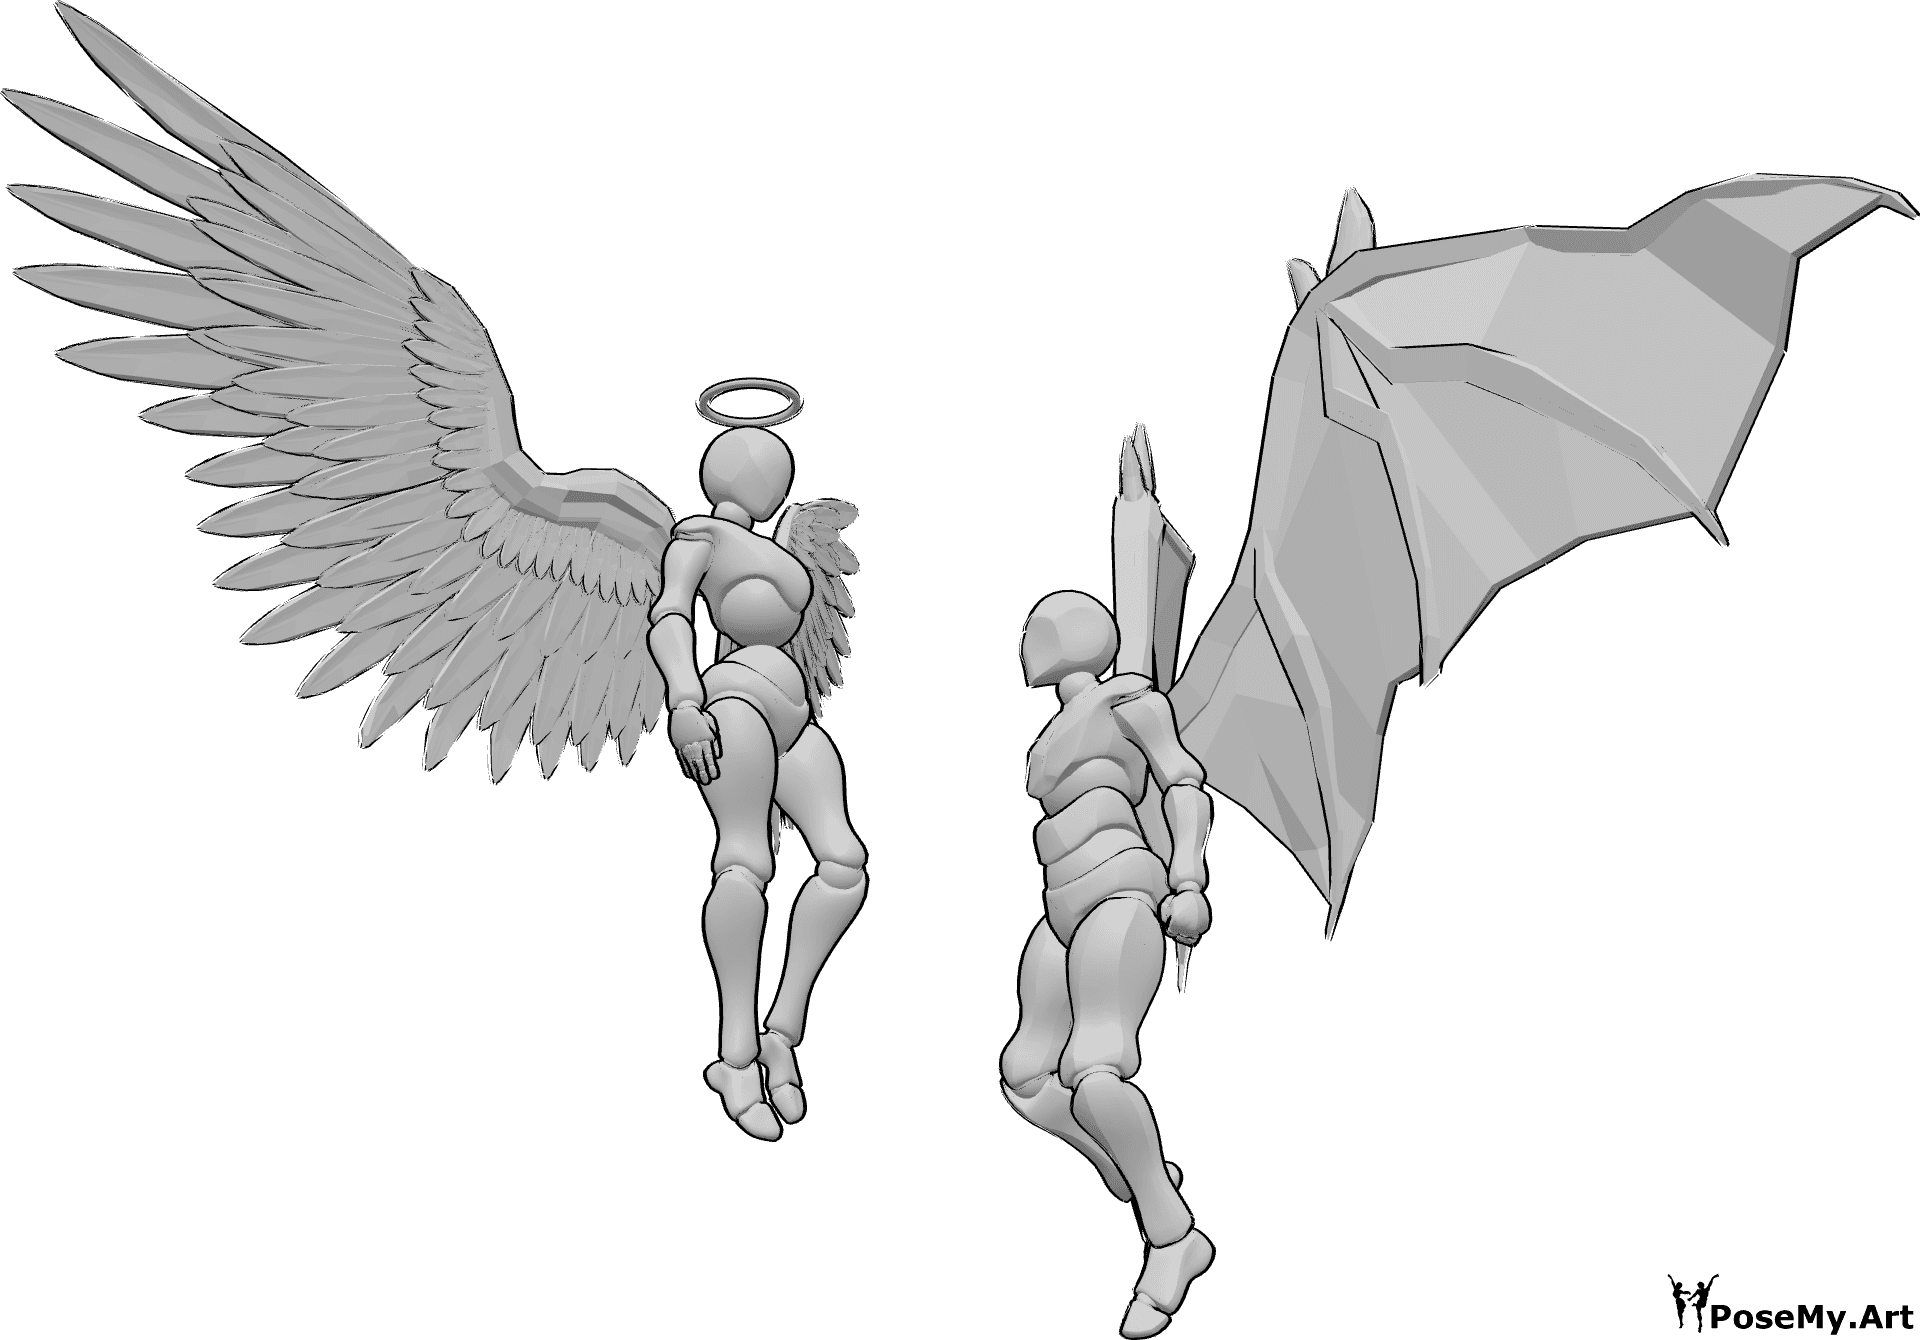 Referência de poses- Pose de anjo e demónio - A mulher anjo e o homem demónio estão a flutuar no ar e olham um para o outro, o anjo olha para ele e o homem cerra os punhos